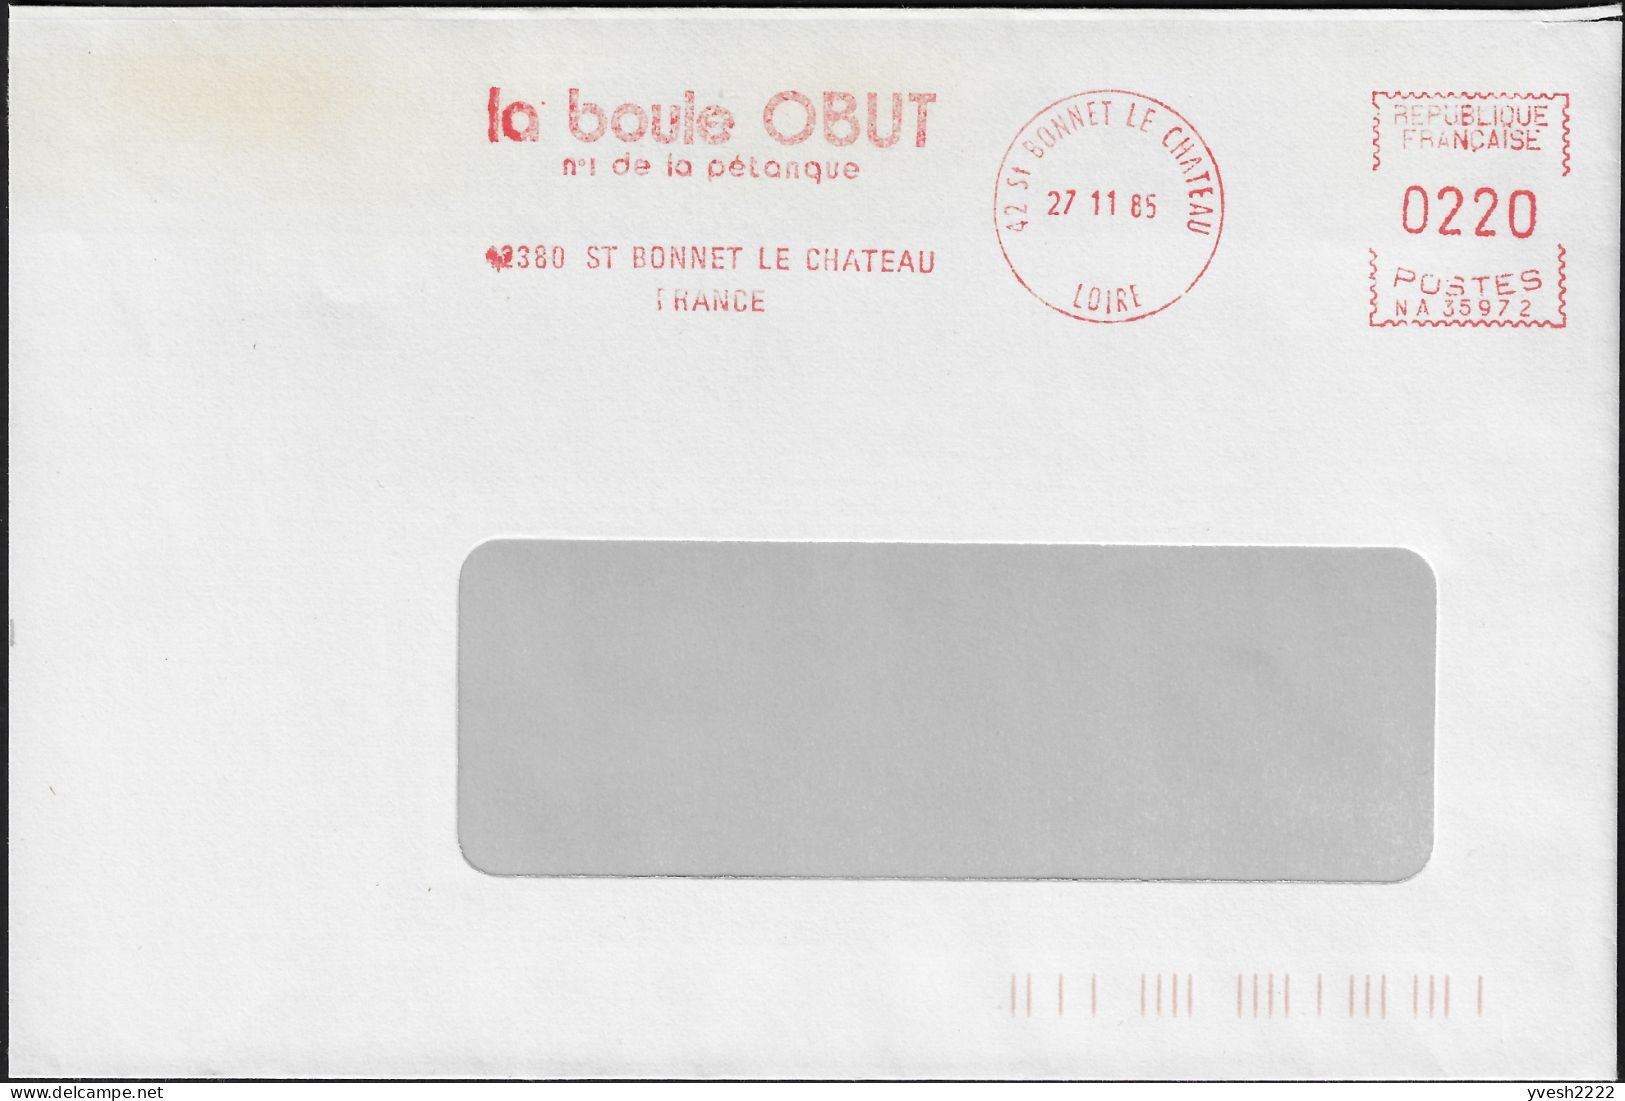 France 1985. Empreinte De Machine à Affranchir Obut. La Boule Obut, N° 1 De La Pétanque - Boule/Pétanque